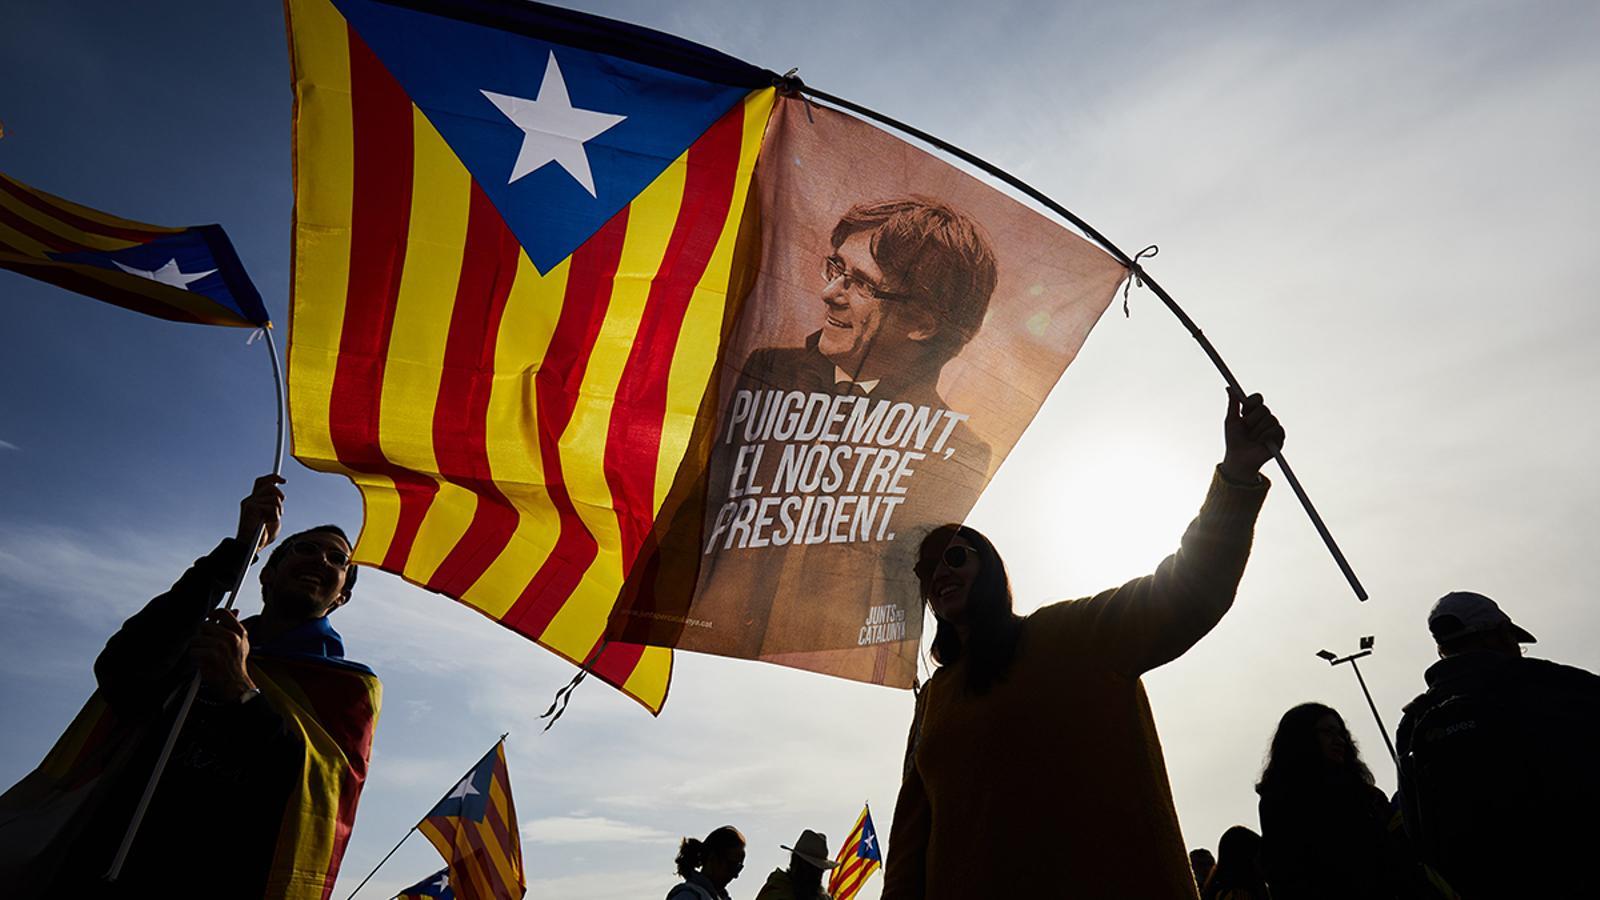 Una estelada amb una banderola que reivindica Puigdemont com a president / David Borrat